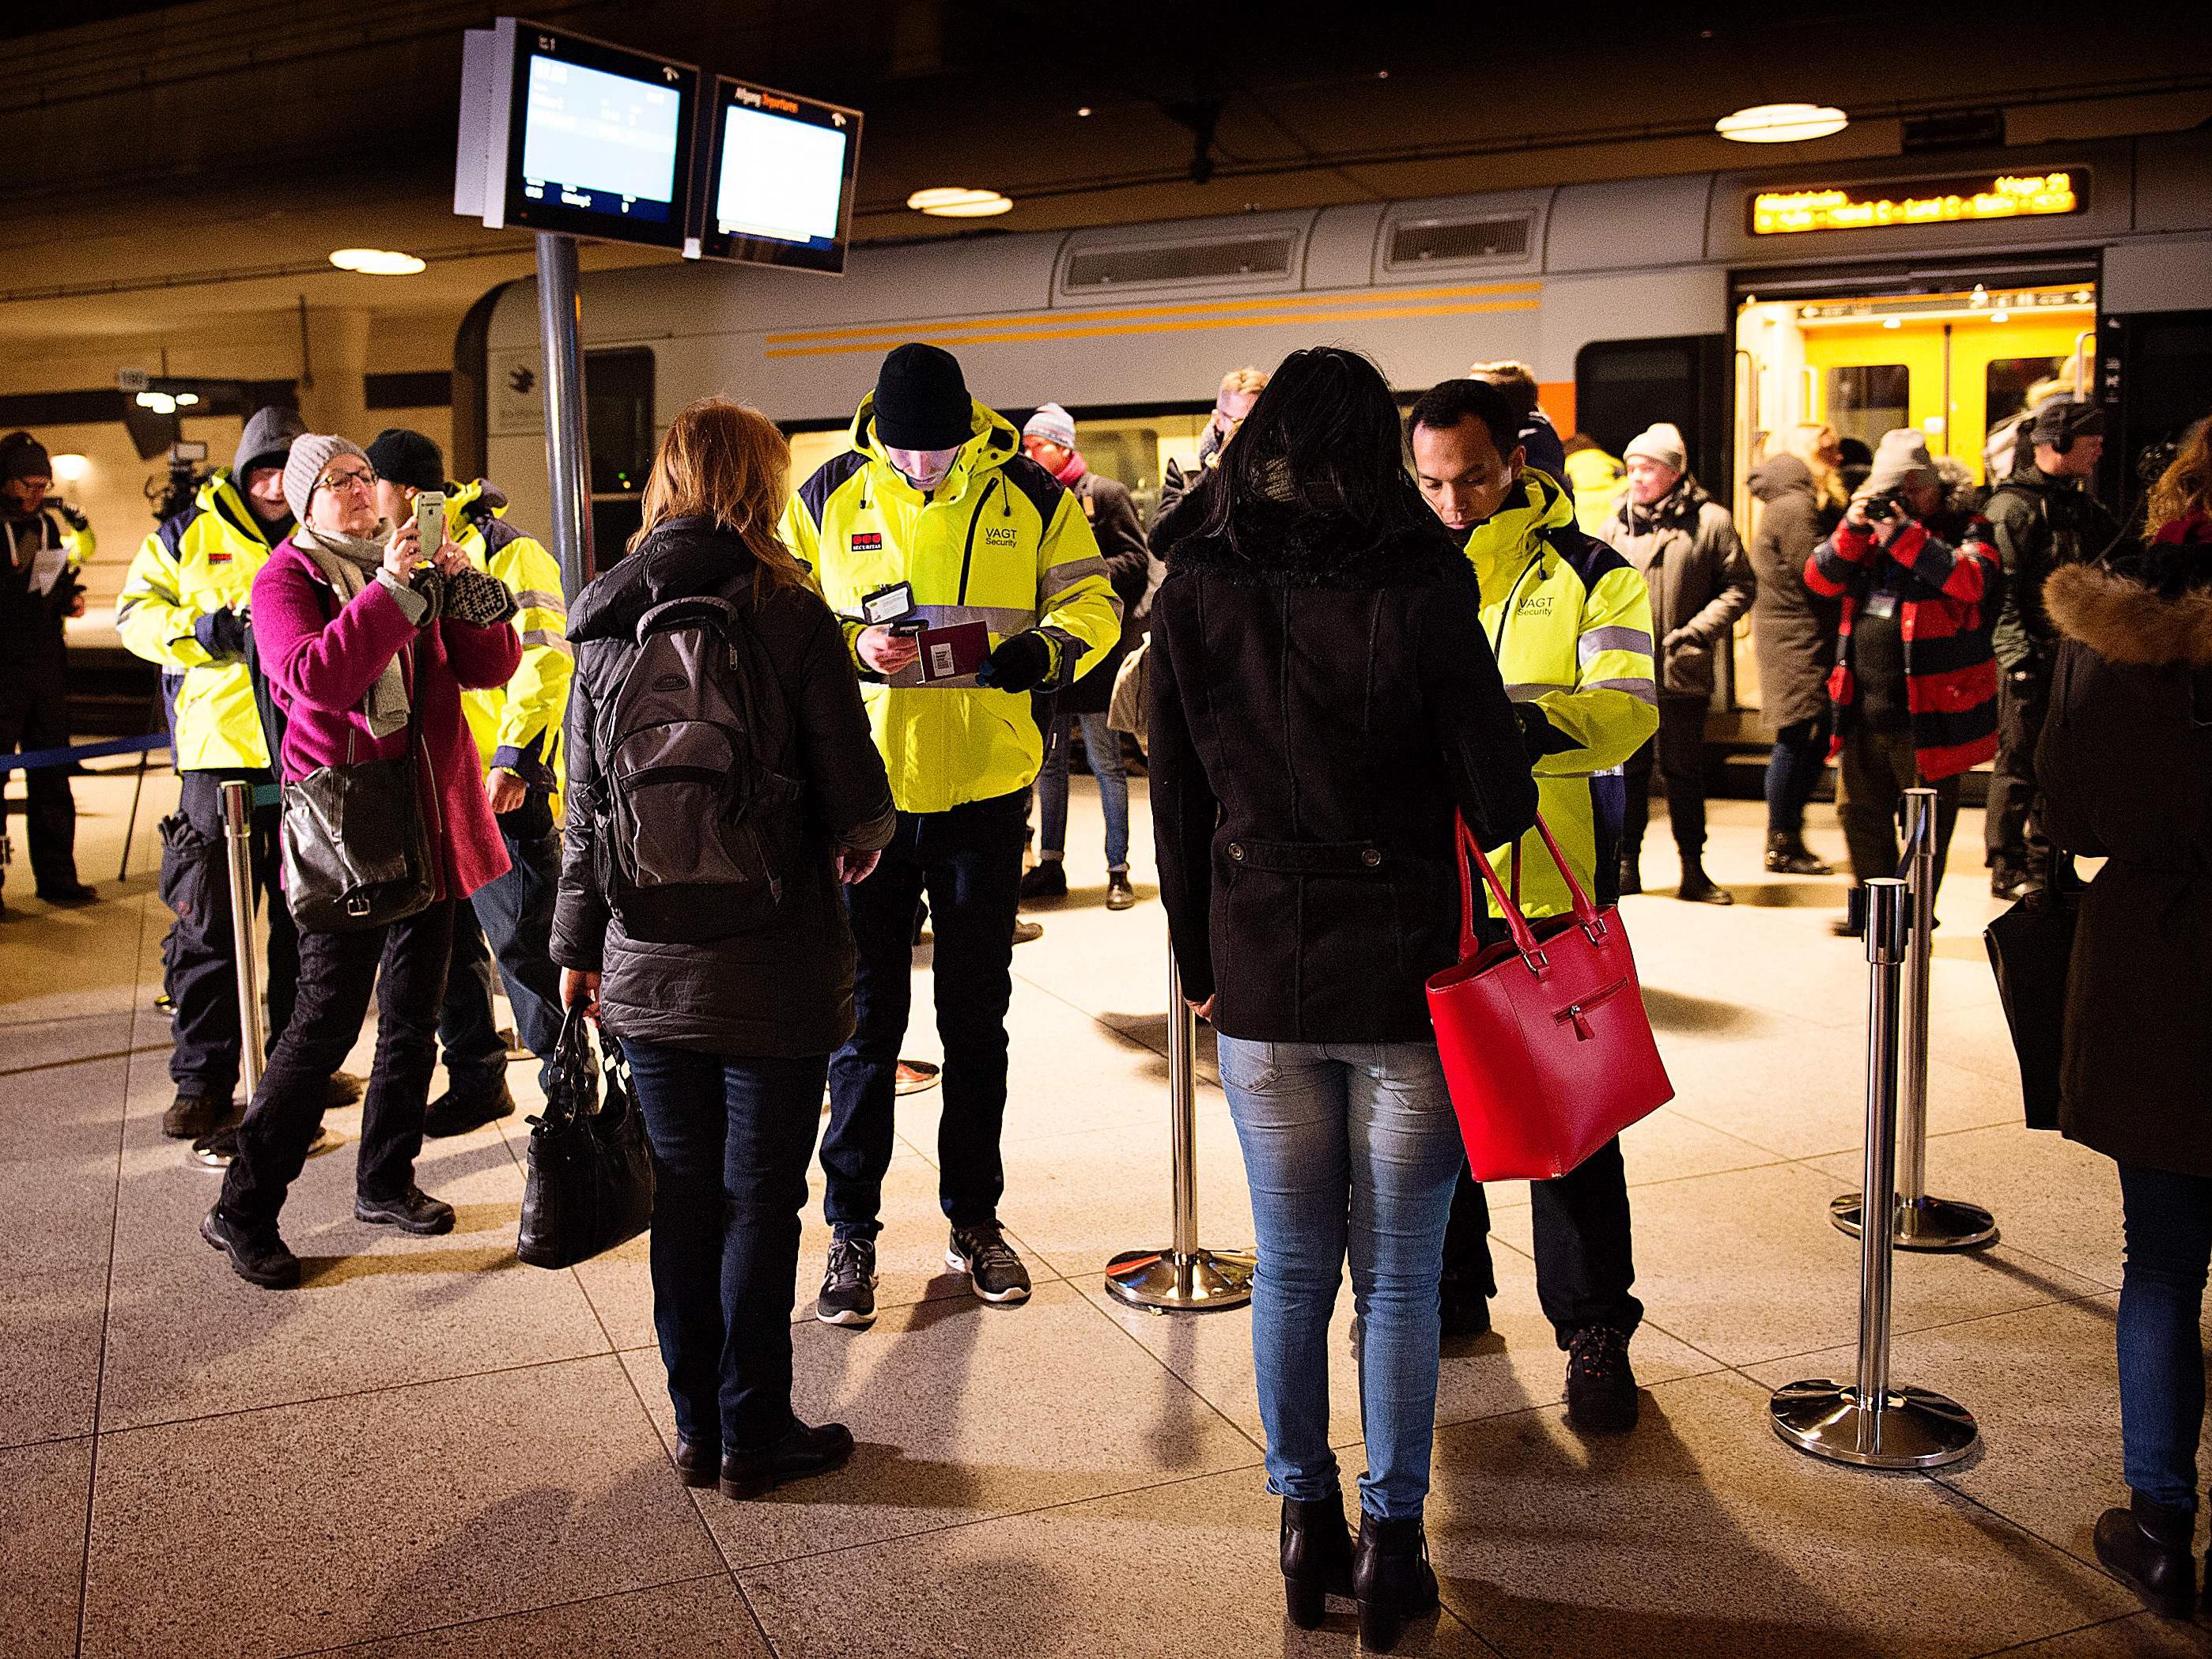 Dänemark reagiert auf schwedische Kontrollen und führt Passkontrollen ein.